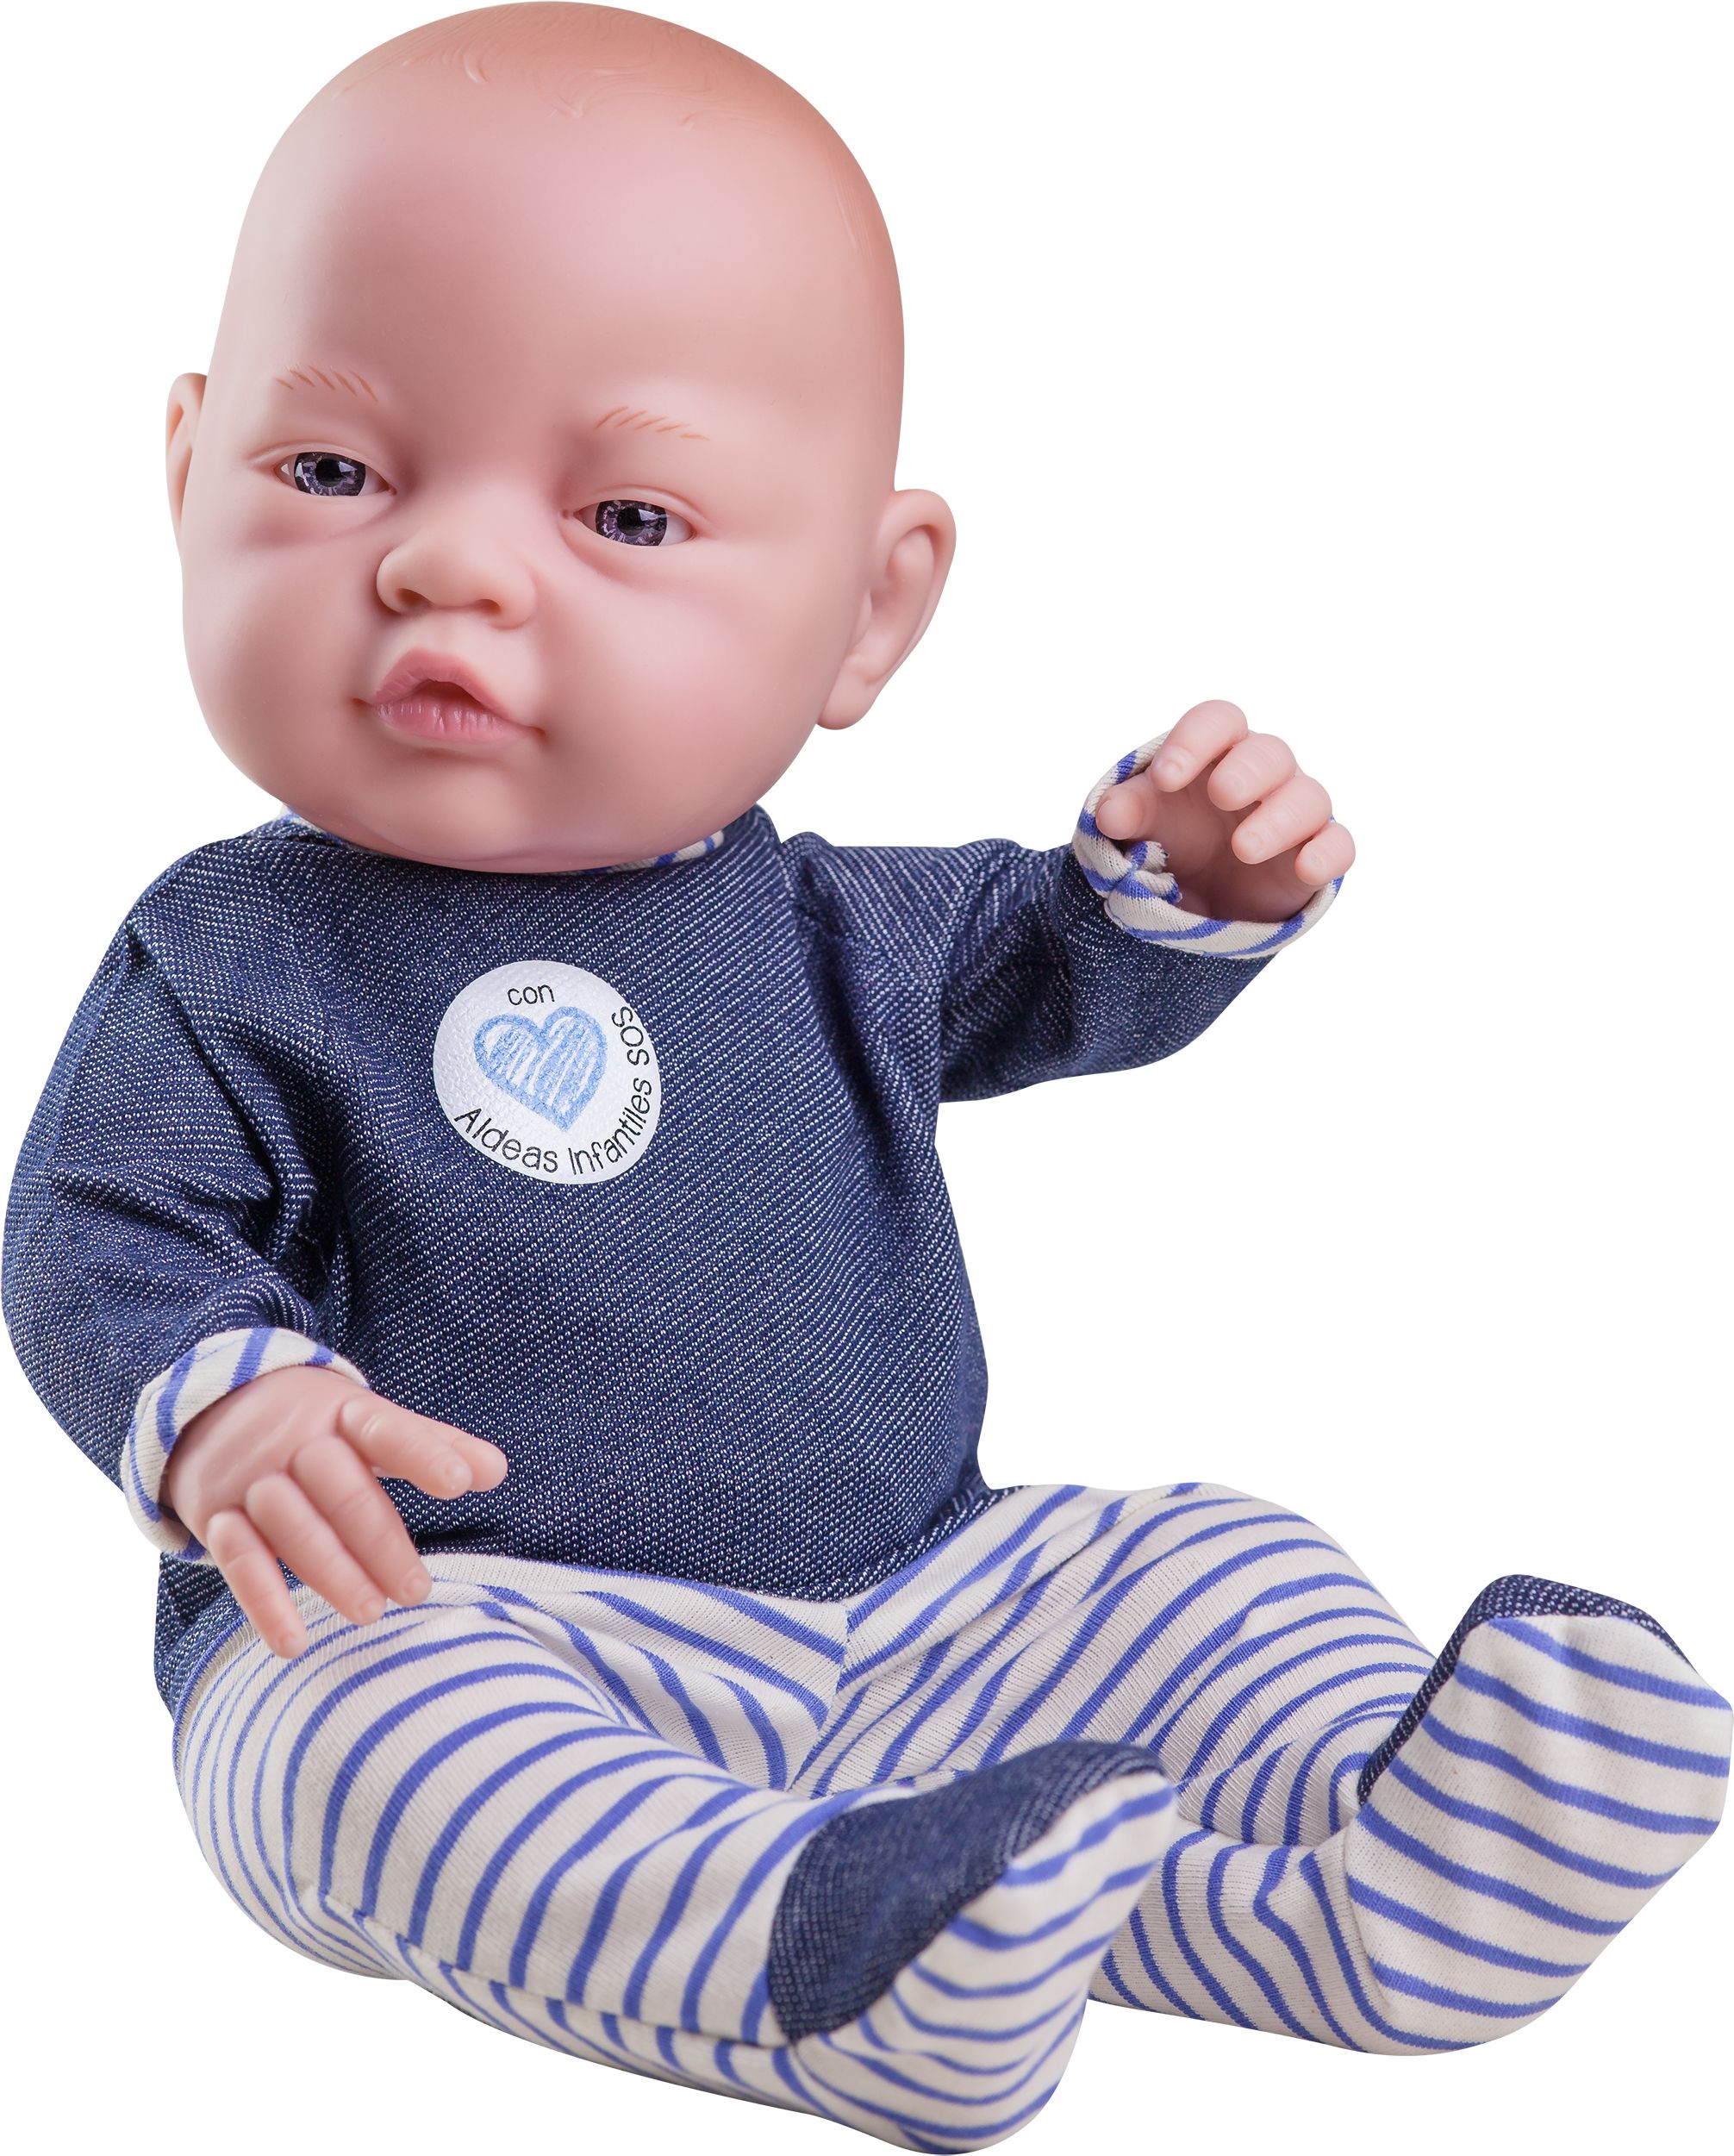 Realistické miminko - chlapeček - Vlastík od firmy Paola Reina ze Španělska - obrázek 1